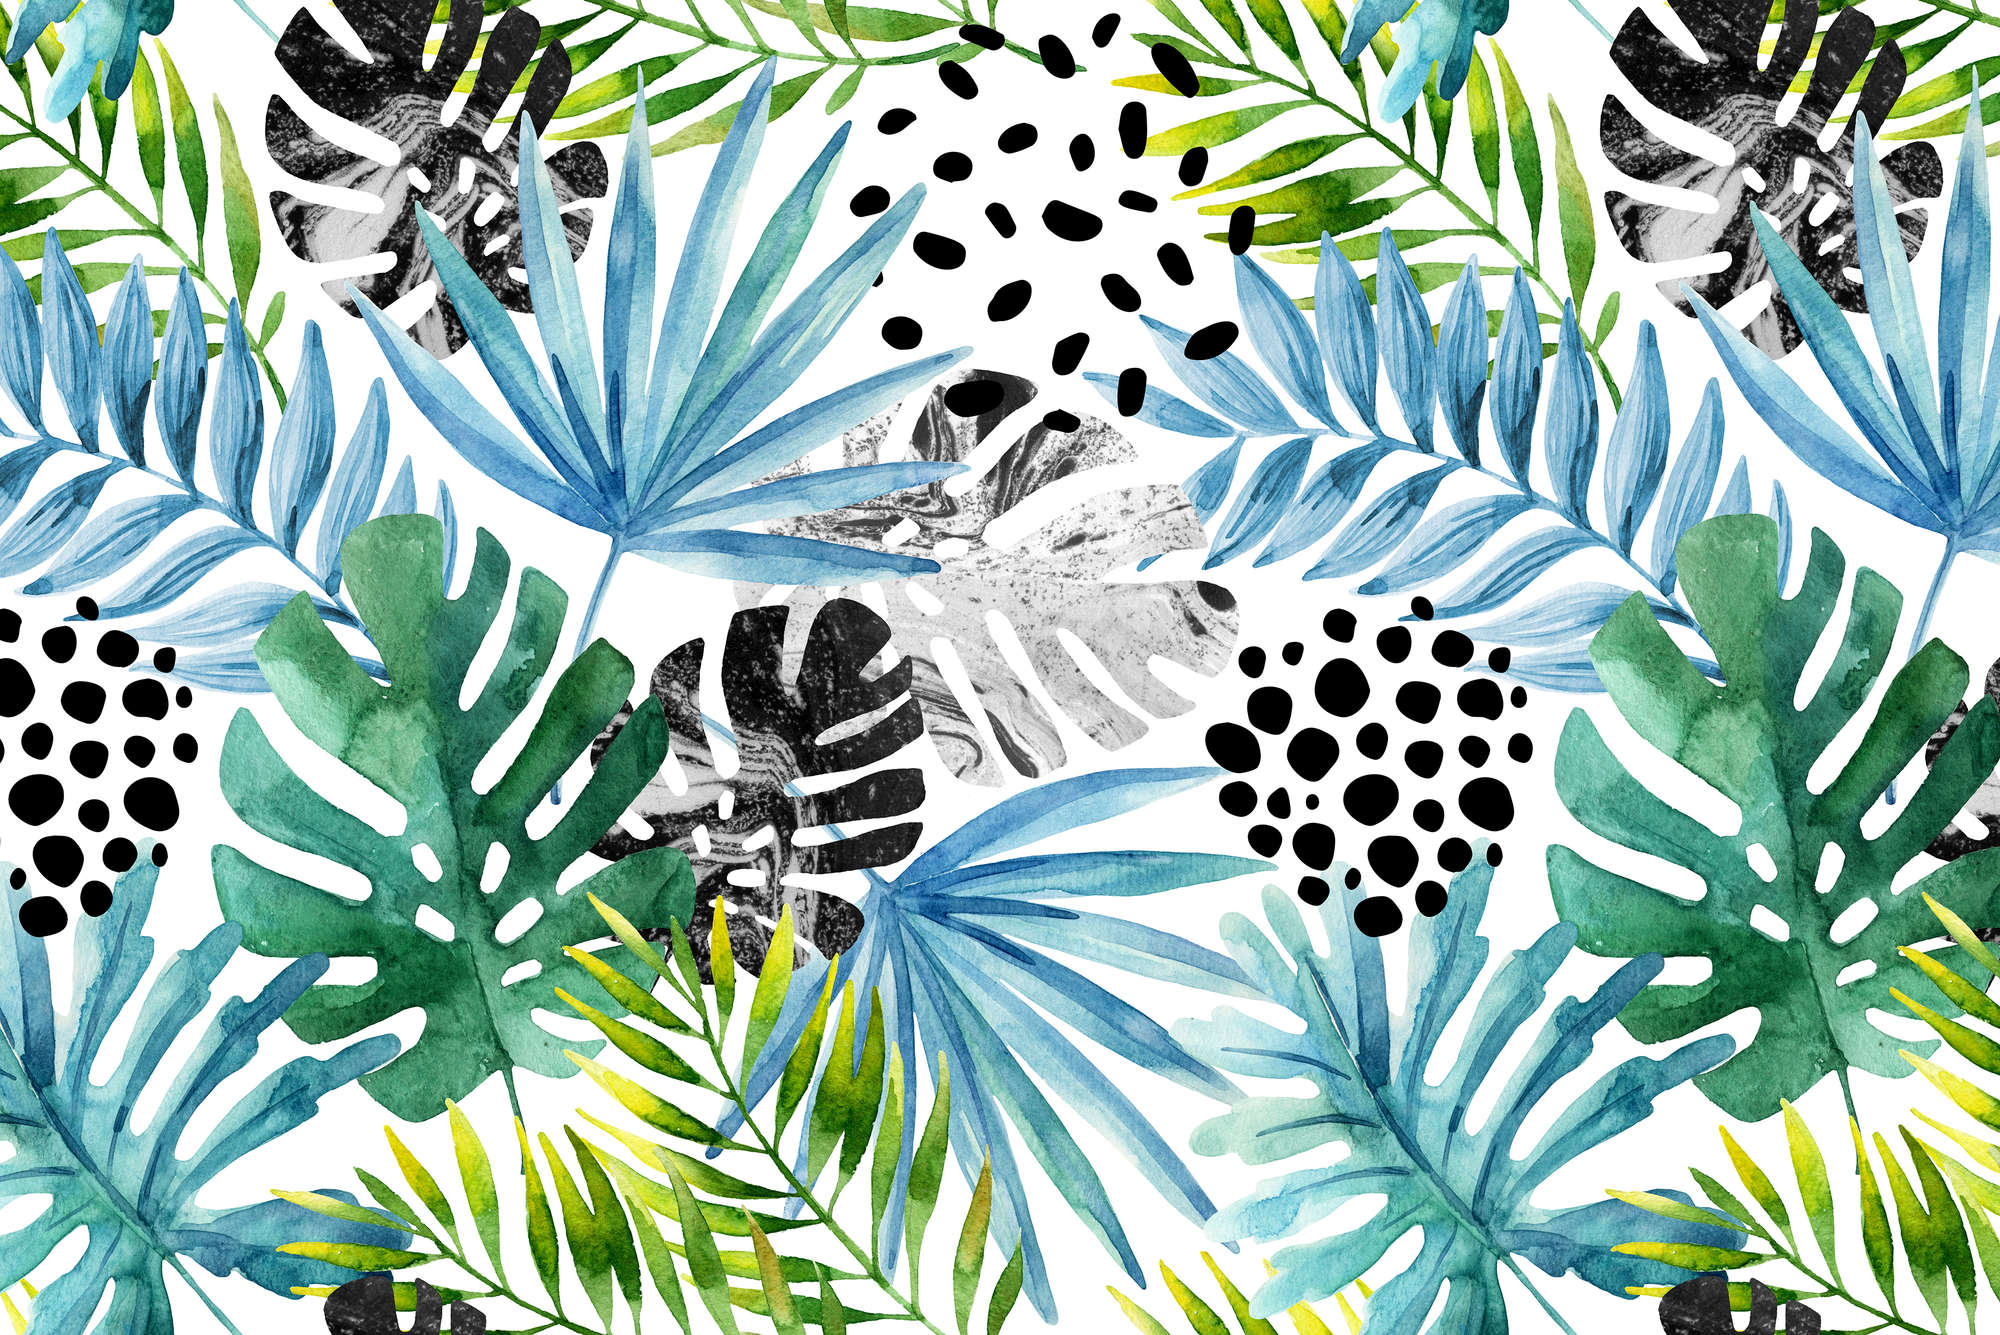             Carta da parati grafica con piante della giungla colorate su tessuto non tessuto testurizzato
        